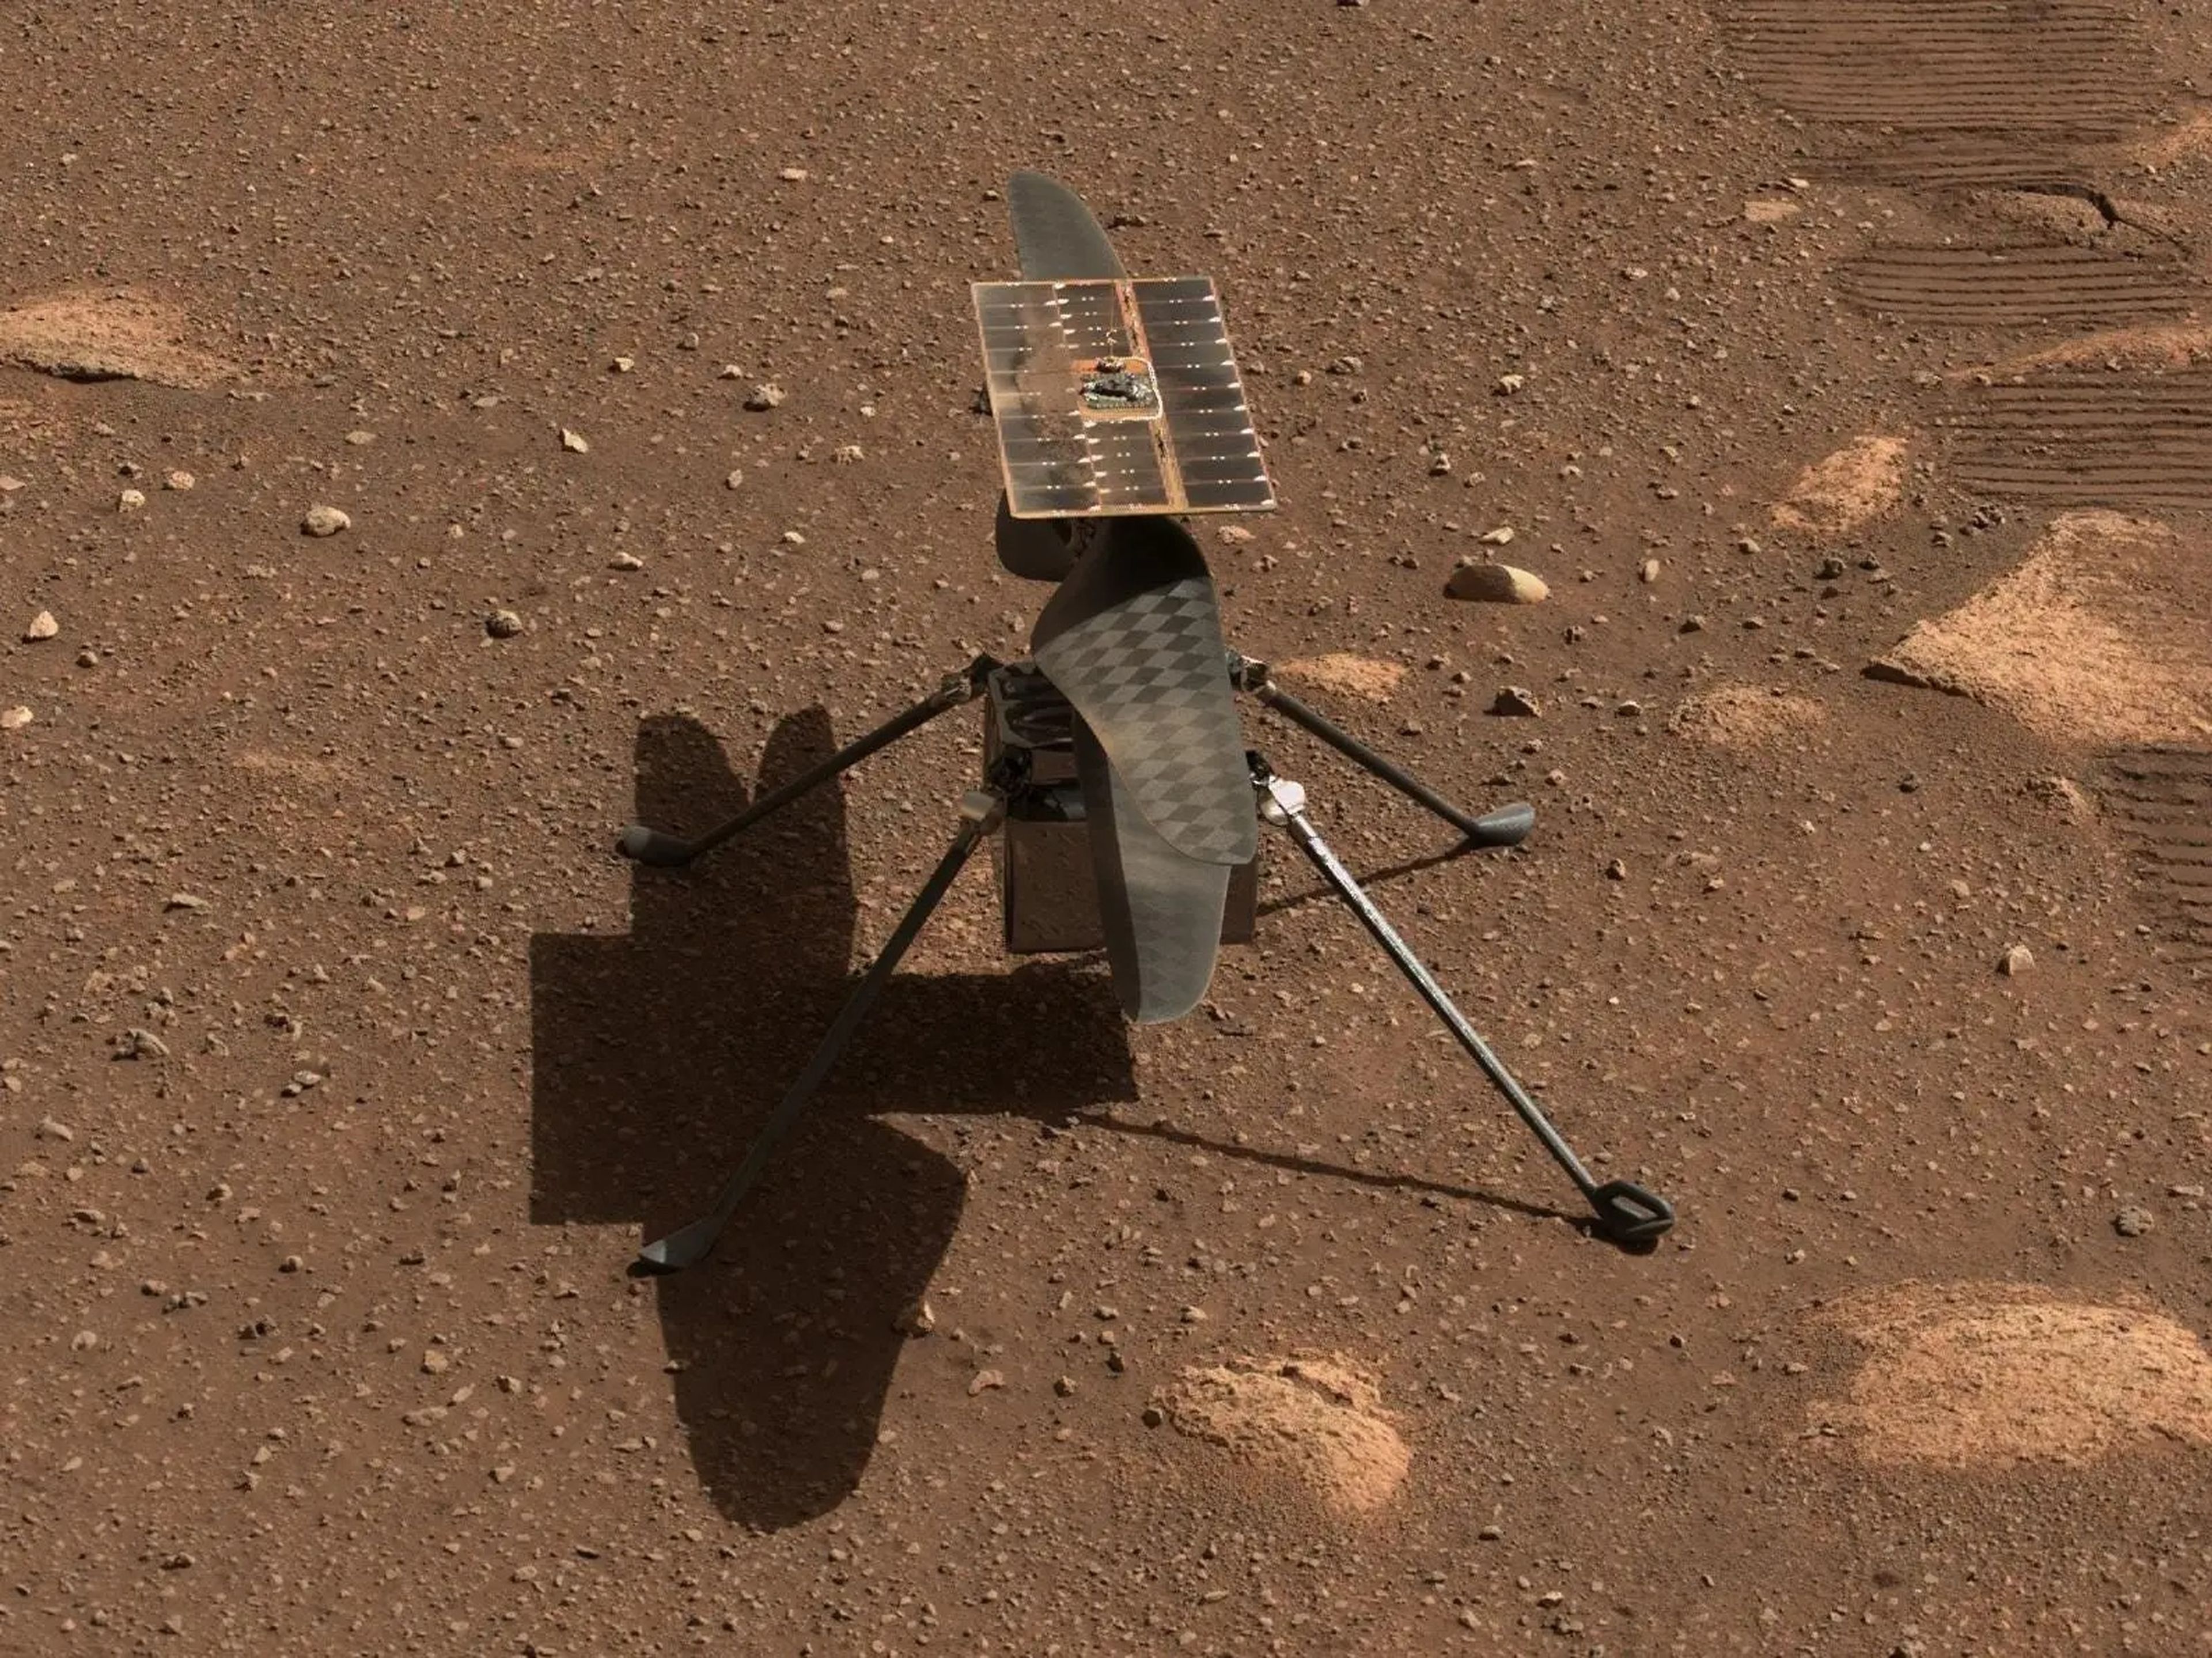 El helicóptero Ingenuity de la NASA en Marte, en un primer plano desde las cámaras del rover Perseverance.